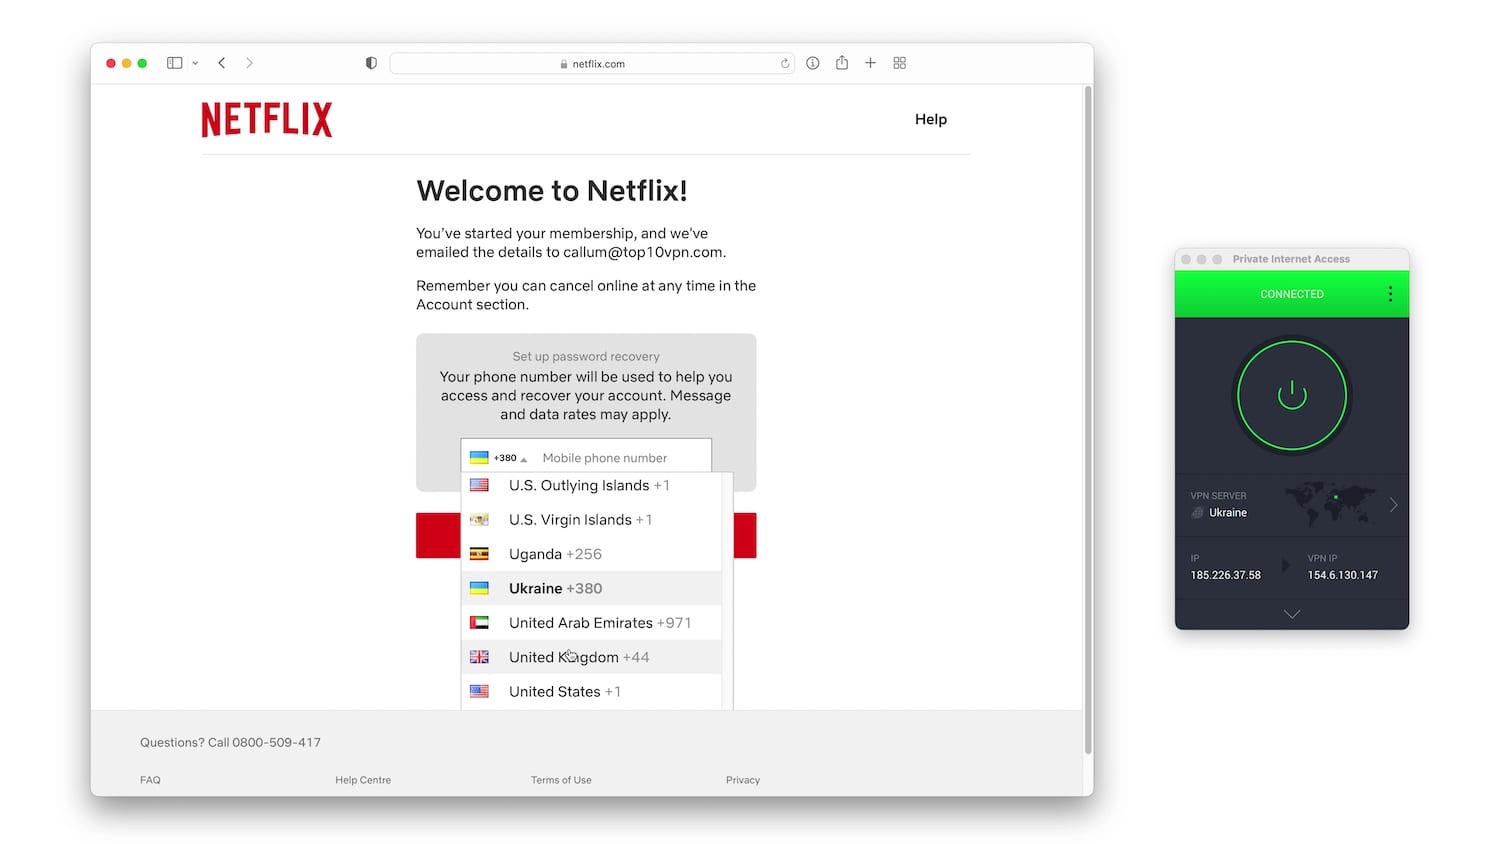 La pantalla de suscripción de Netflix, incluyendo el menú de las extensiones telefónicas que están asociadas a la cuenta